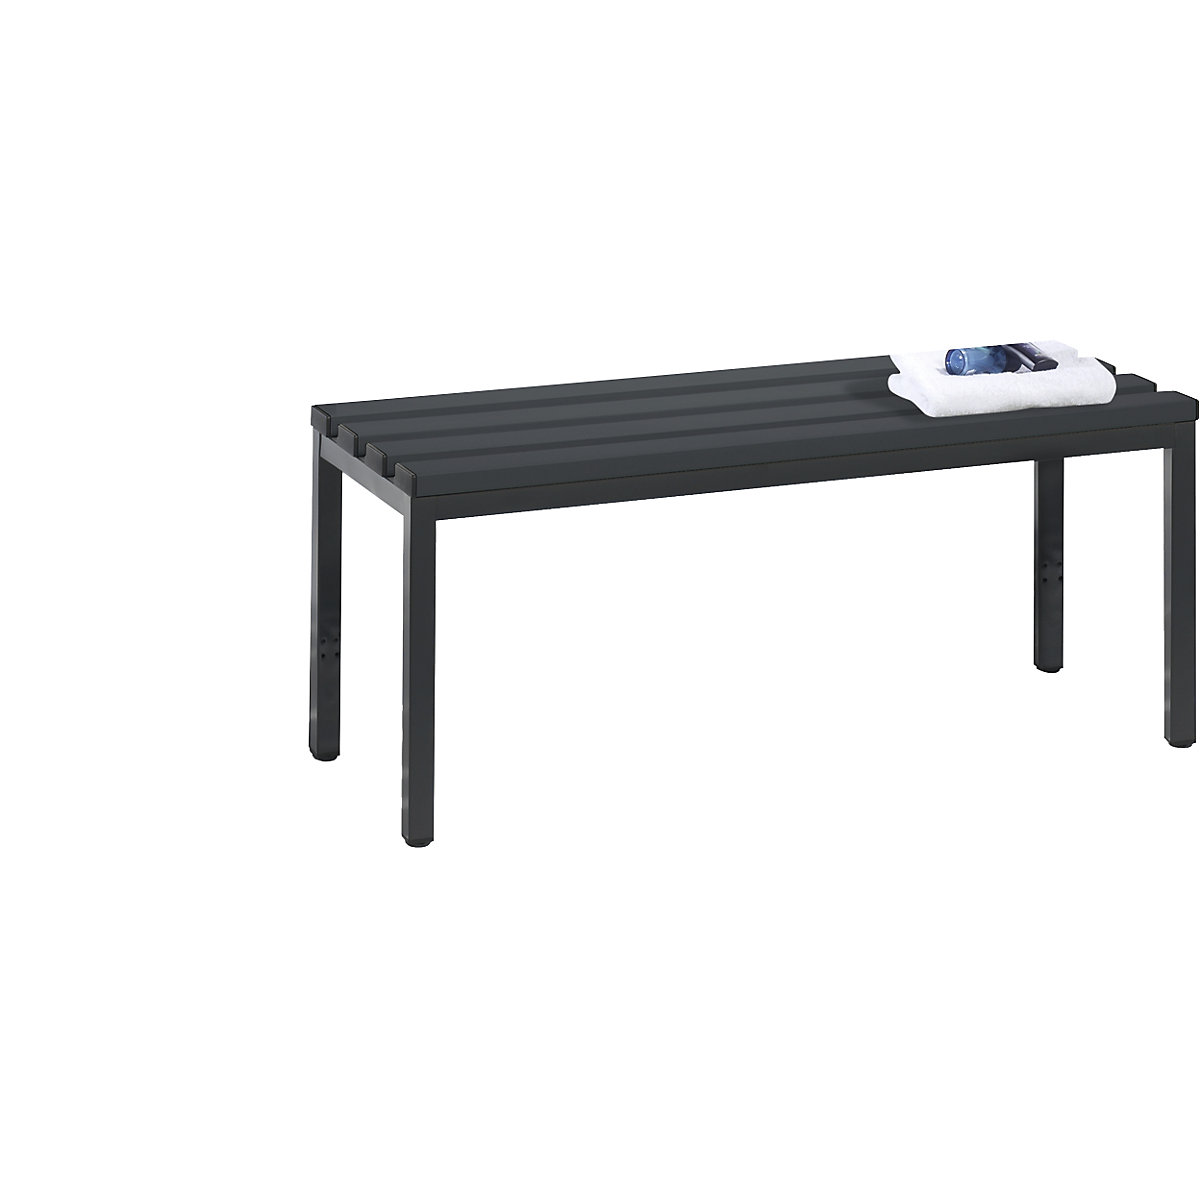 Šatnová lavice BASIC – C+P, plast, délka 1000 mm, černošedá-6